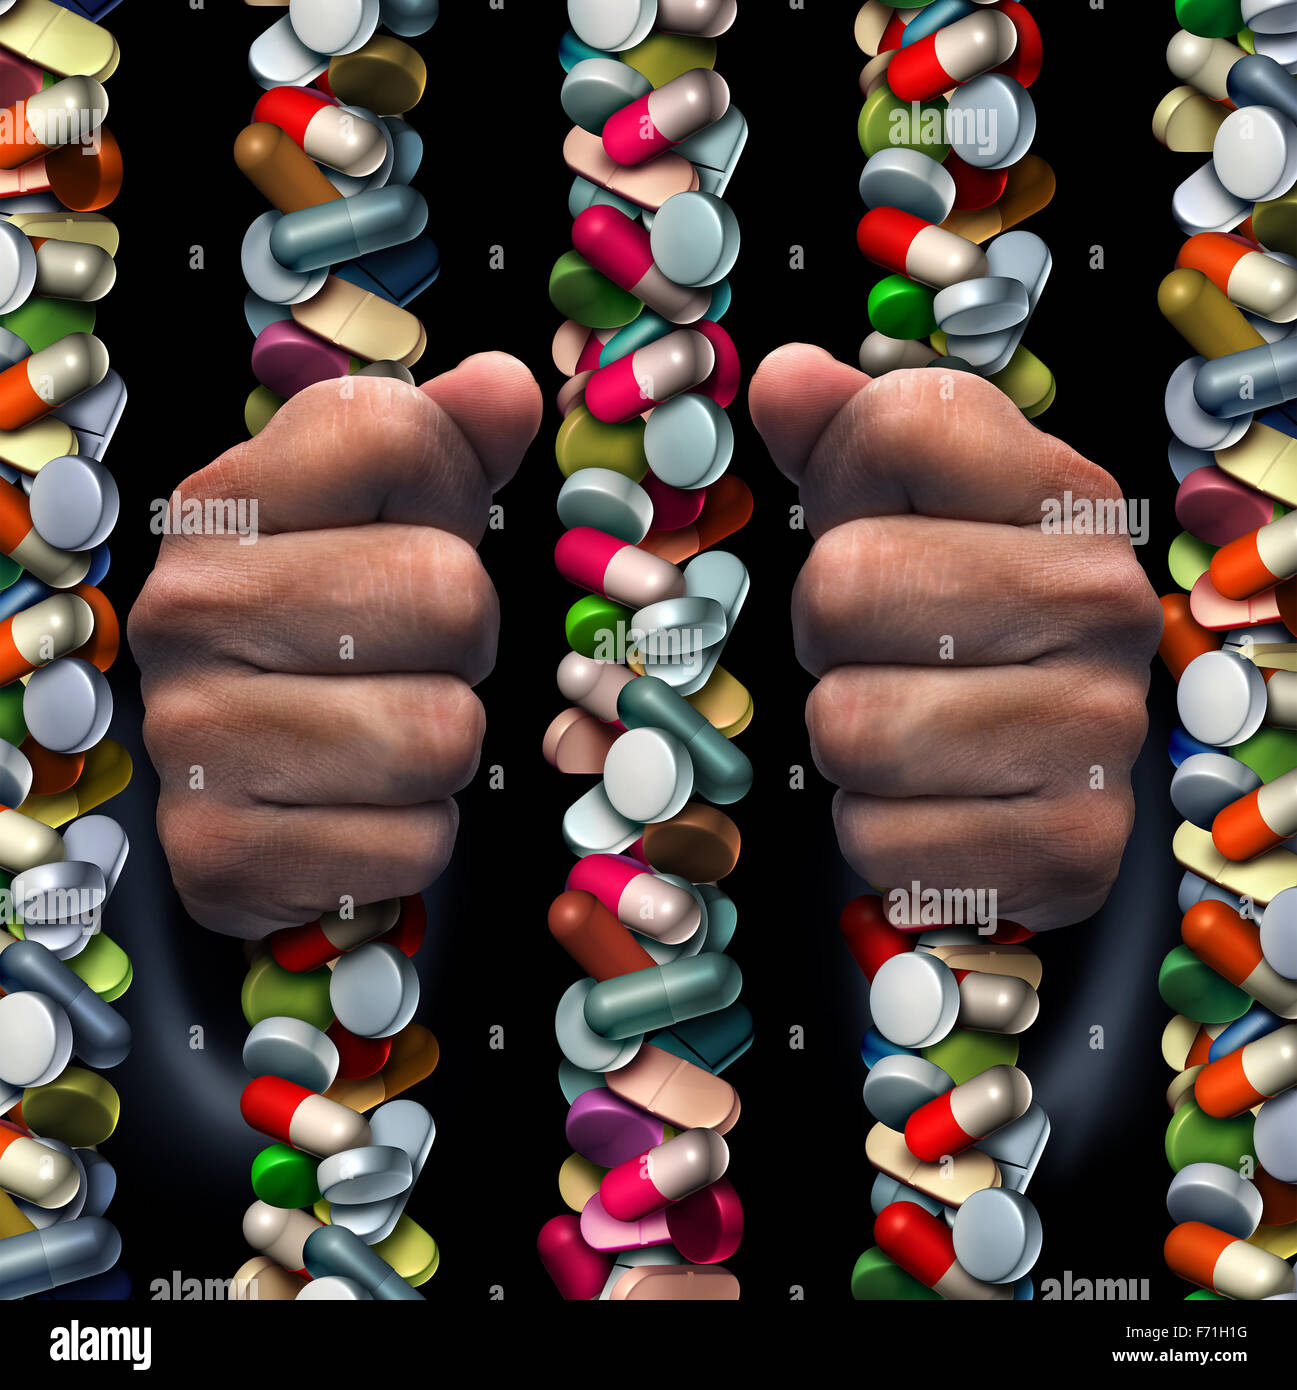 Verschreibungspflichtige Arzneimittel sucht medizinisches Konzept als eine Gruppe von Medizin-Kapseln und Schmerzmittel-Pillen geformt als Gefängnis oder Gefängnis Balken wie ein Gesundheitswesen Symbol mit einer Medikamenten-Süchtigen in gefangen. Stockfoto